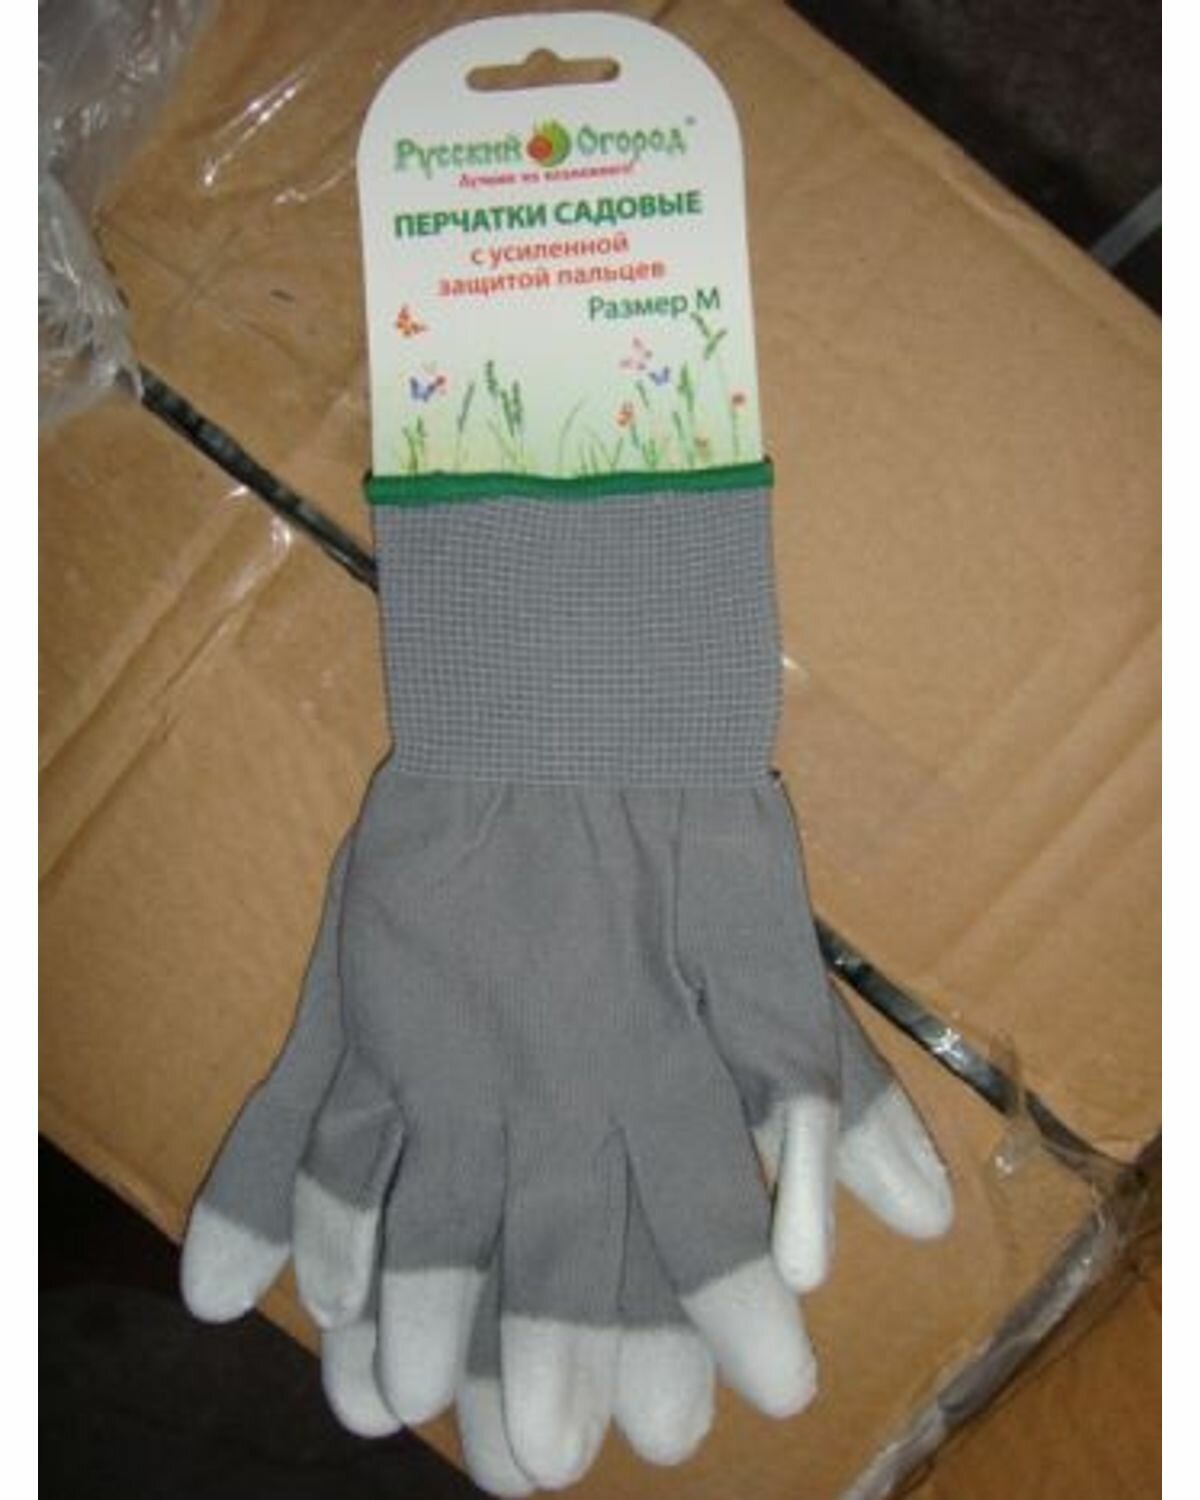 Перчатки садовые с усилинной защитой пальцев серые М "РО"